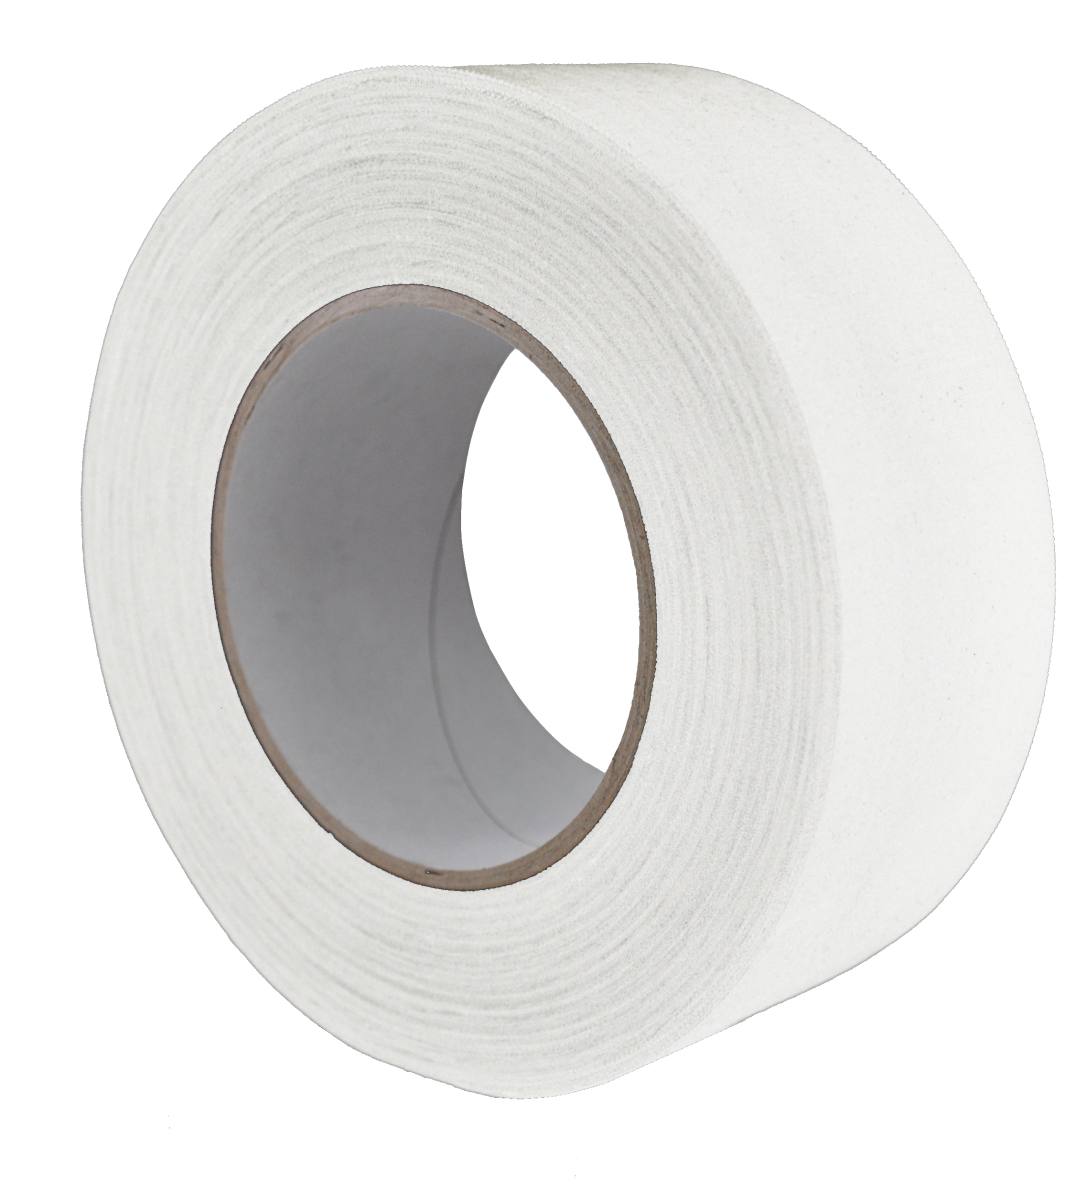 S-K-S 970 Raw fabric adhesive tape, 100 mm x 50 m, white, 0.240 mm